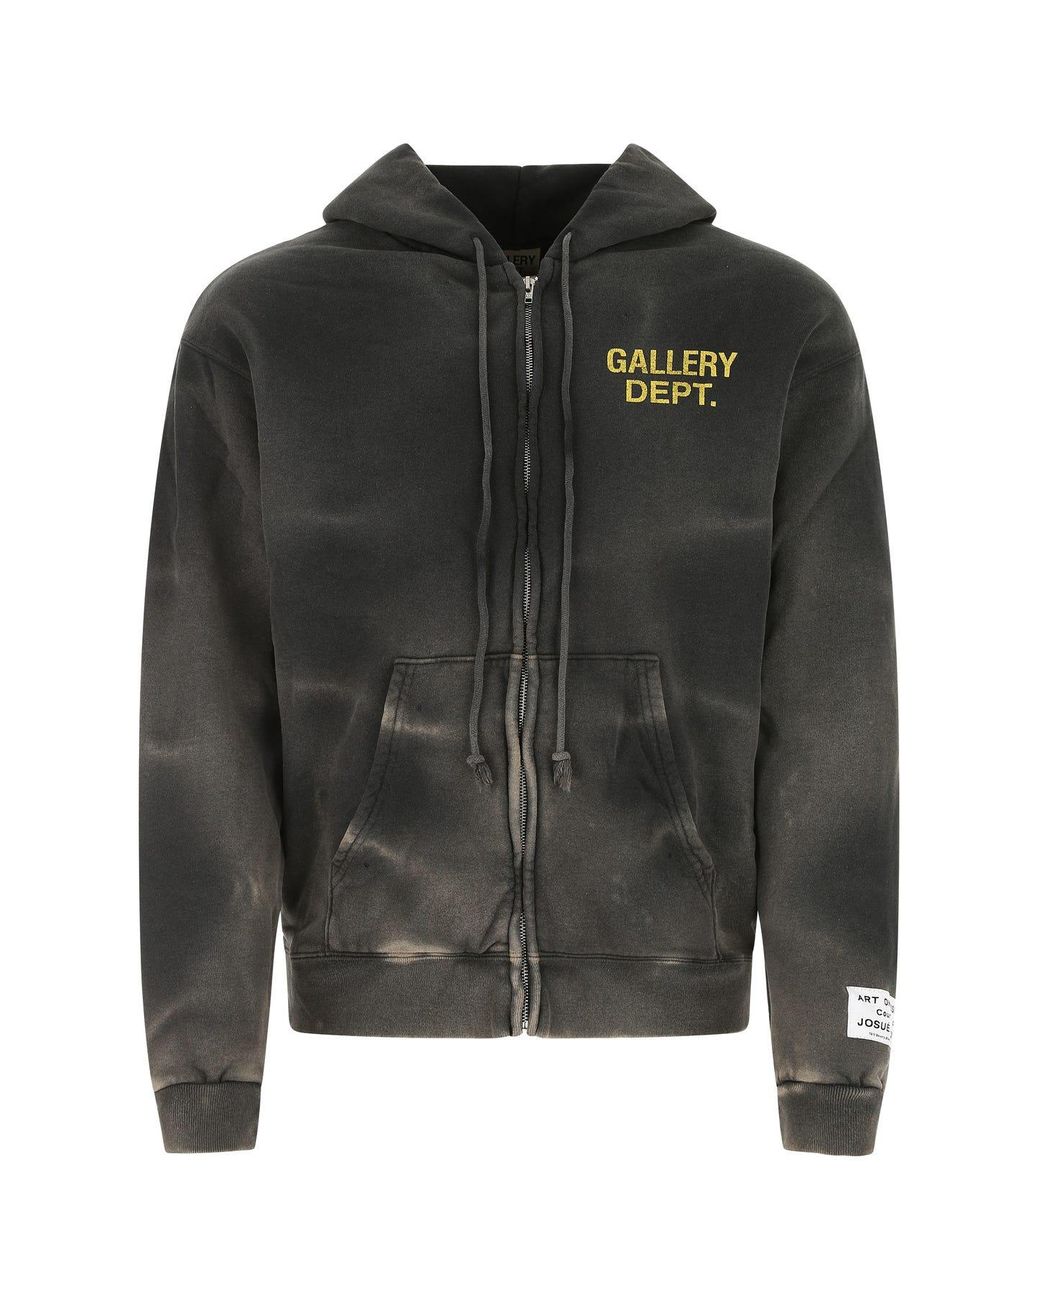 GALLERY DEPT. Dark Cotton Sweatshirt in Gray for Men | Lyst